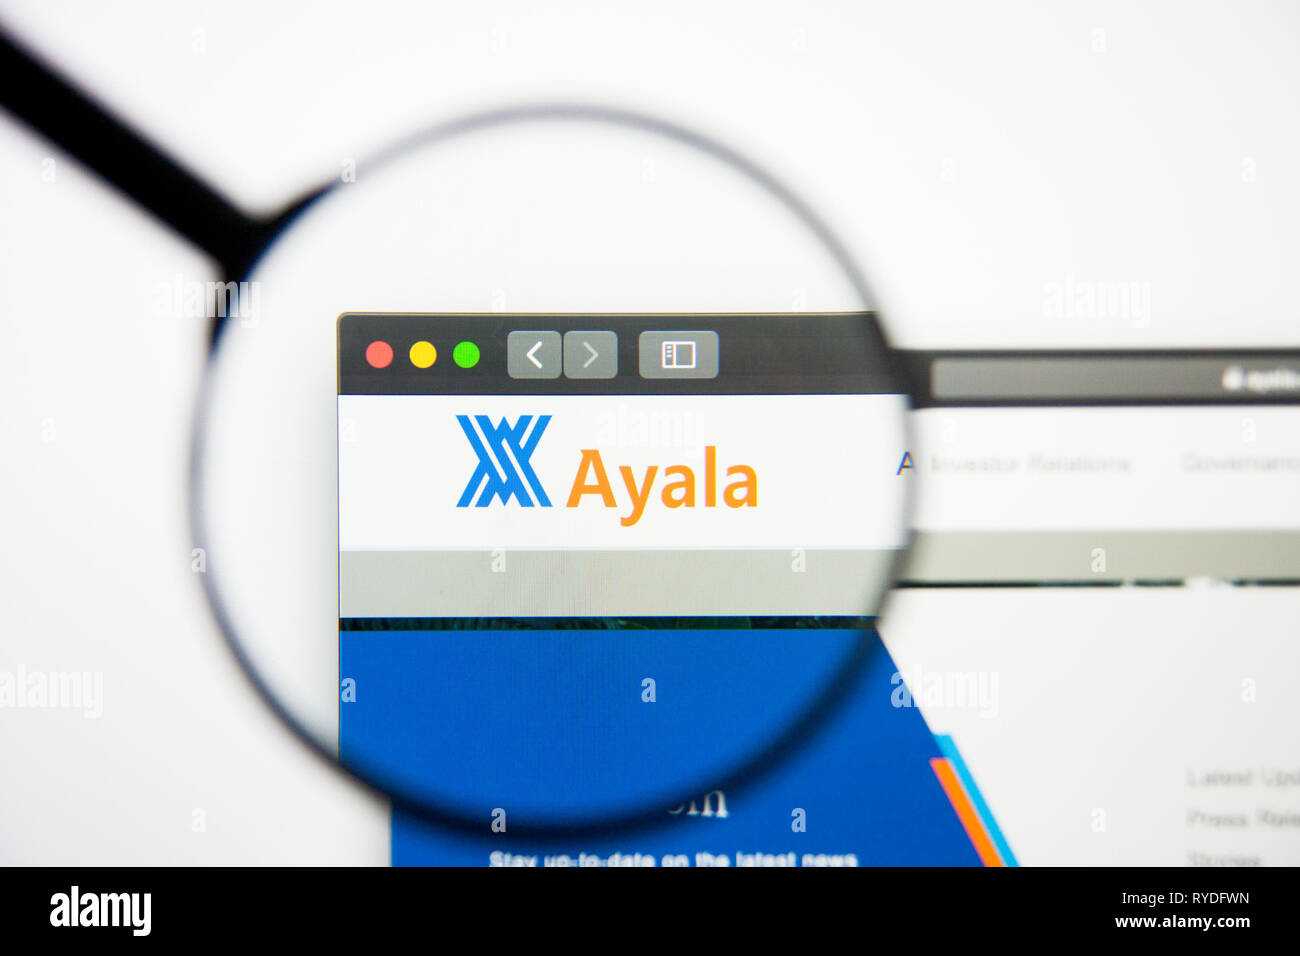 Los Angeles, Californie, USA - 5 mars 2019 : Ayala accueil du site. Logo Ayala visible sur l'écran d'affichage, de rédaction d'illustration Banque D'Images